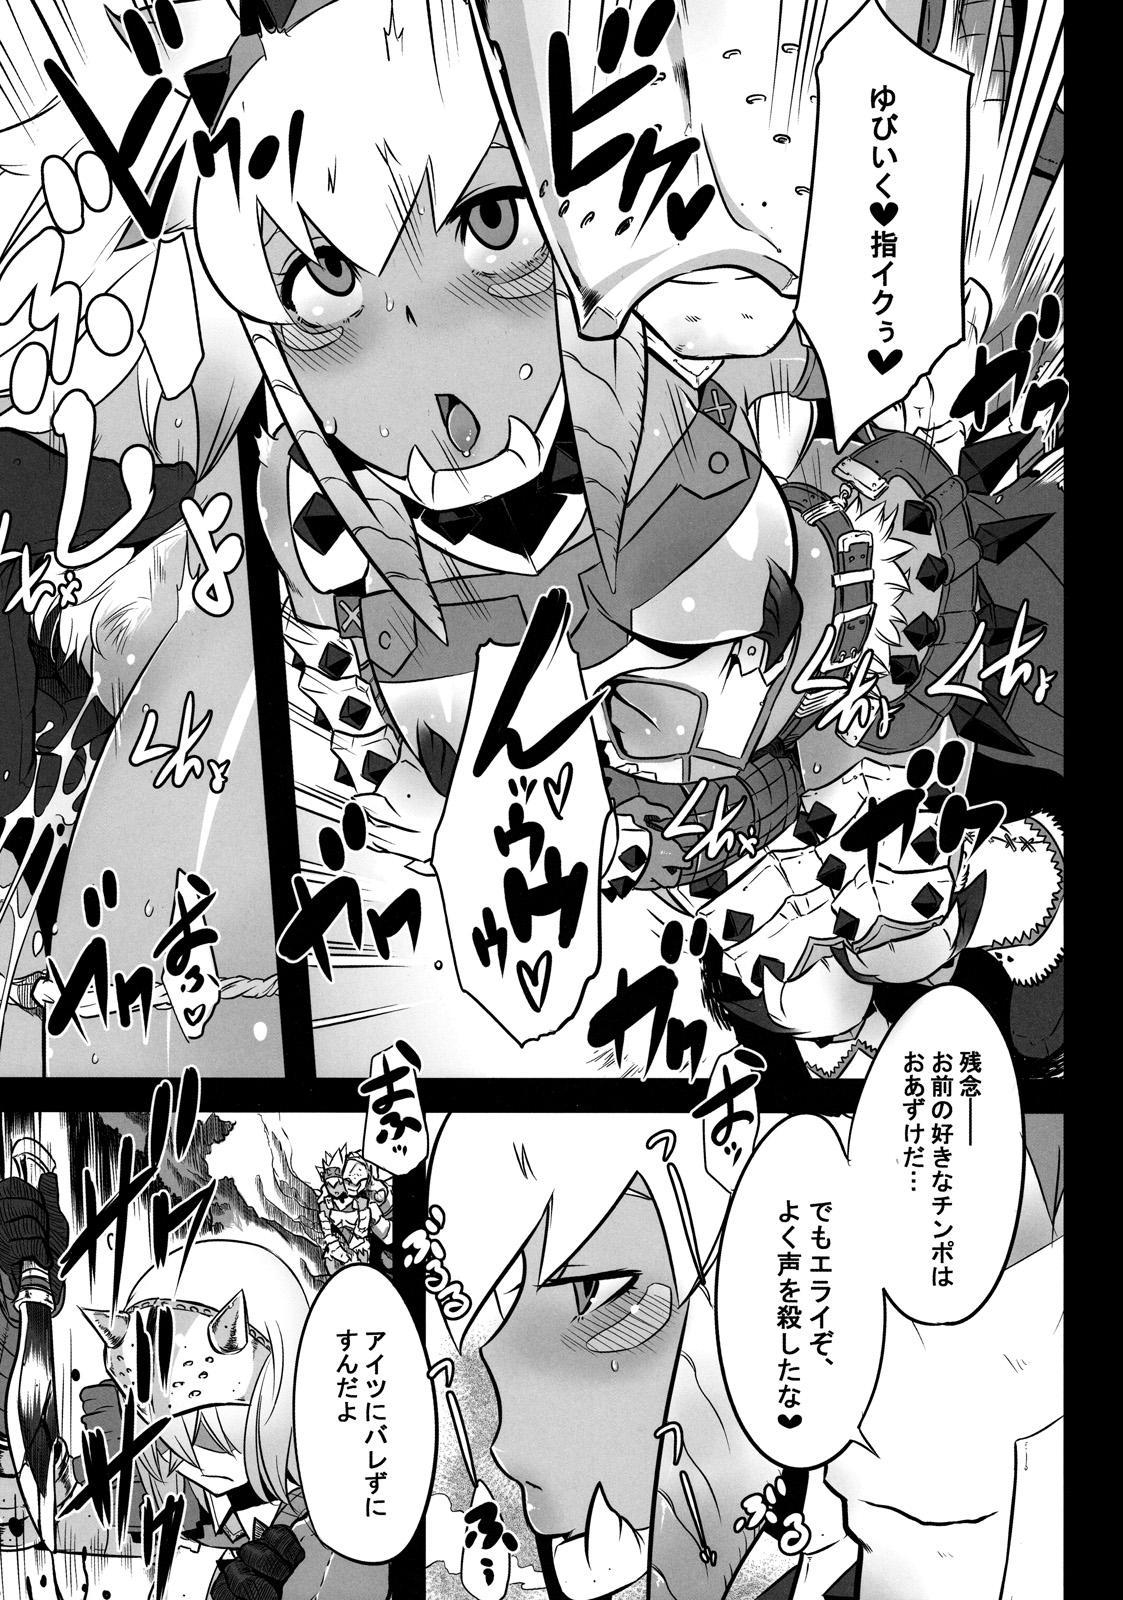 Speculum Hanshoku Nebura - Monster hunter Maid - Page 9